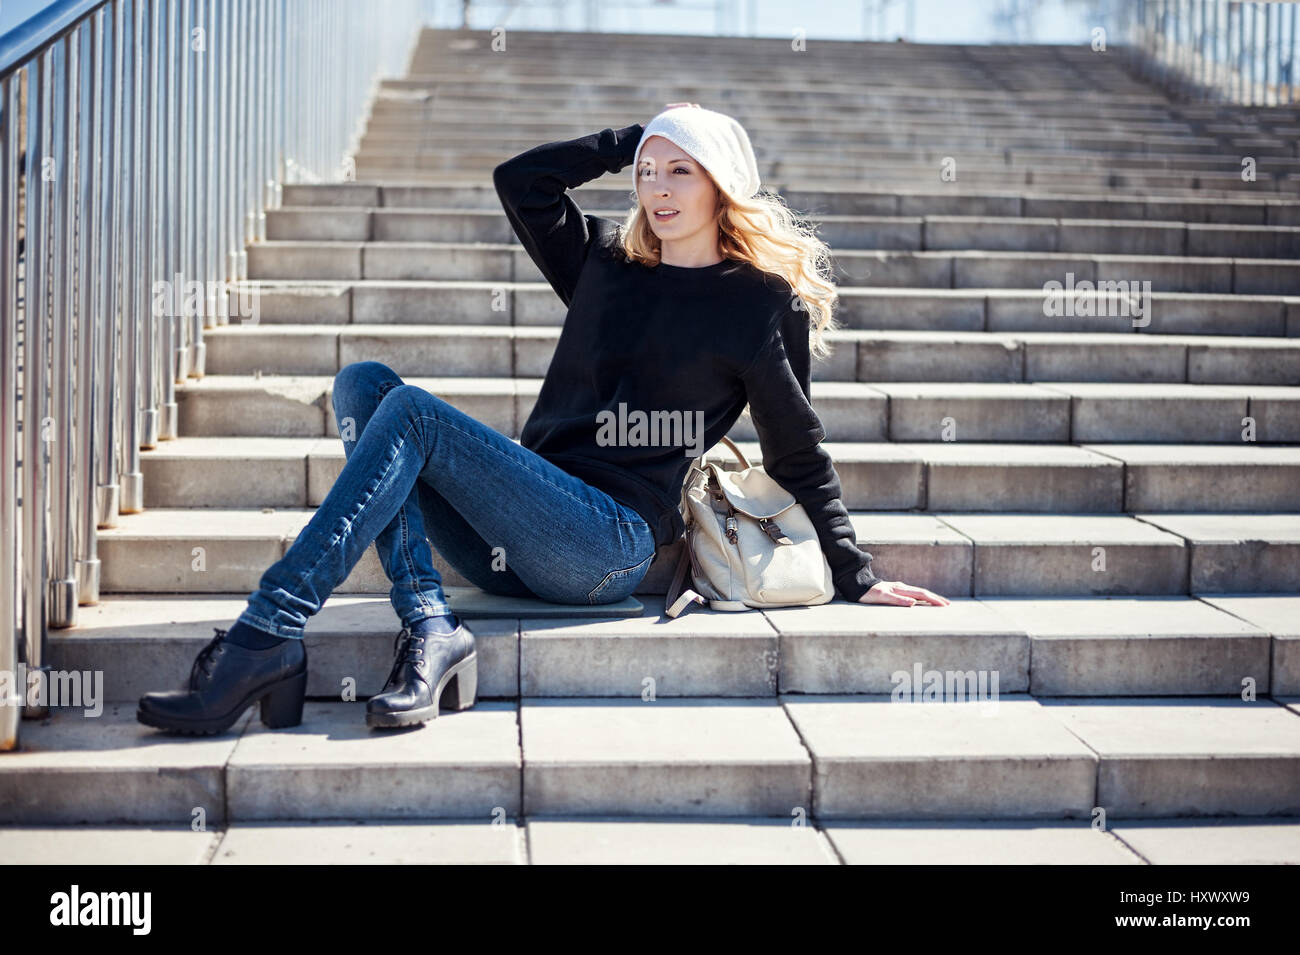 Street fashion schauen. schöne Mädchen mit weißen Hut, Black Hoody, Schuhe  und Jeans Stockfotografie - Alamy